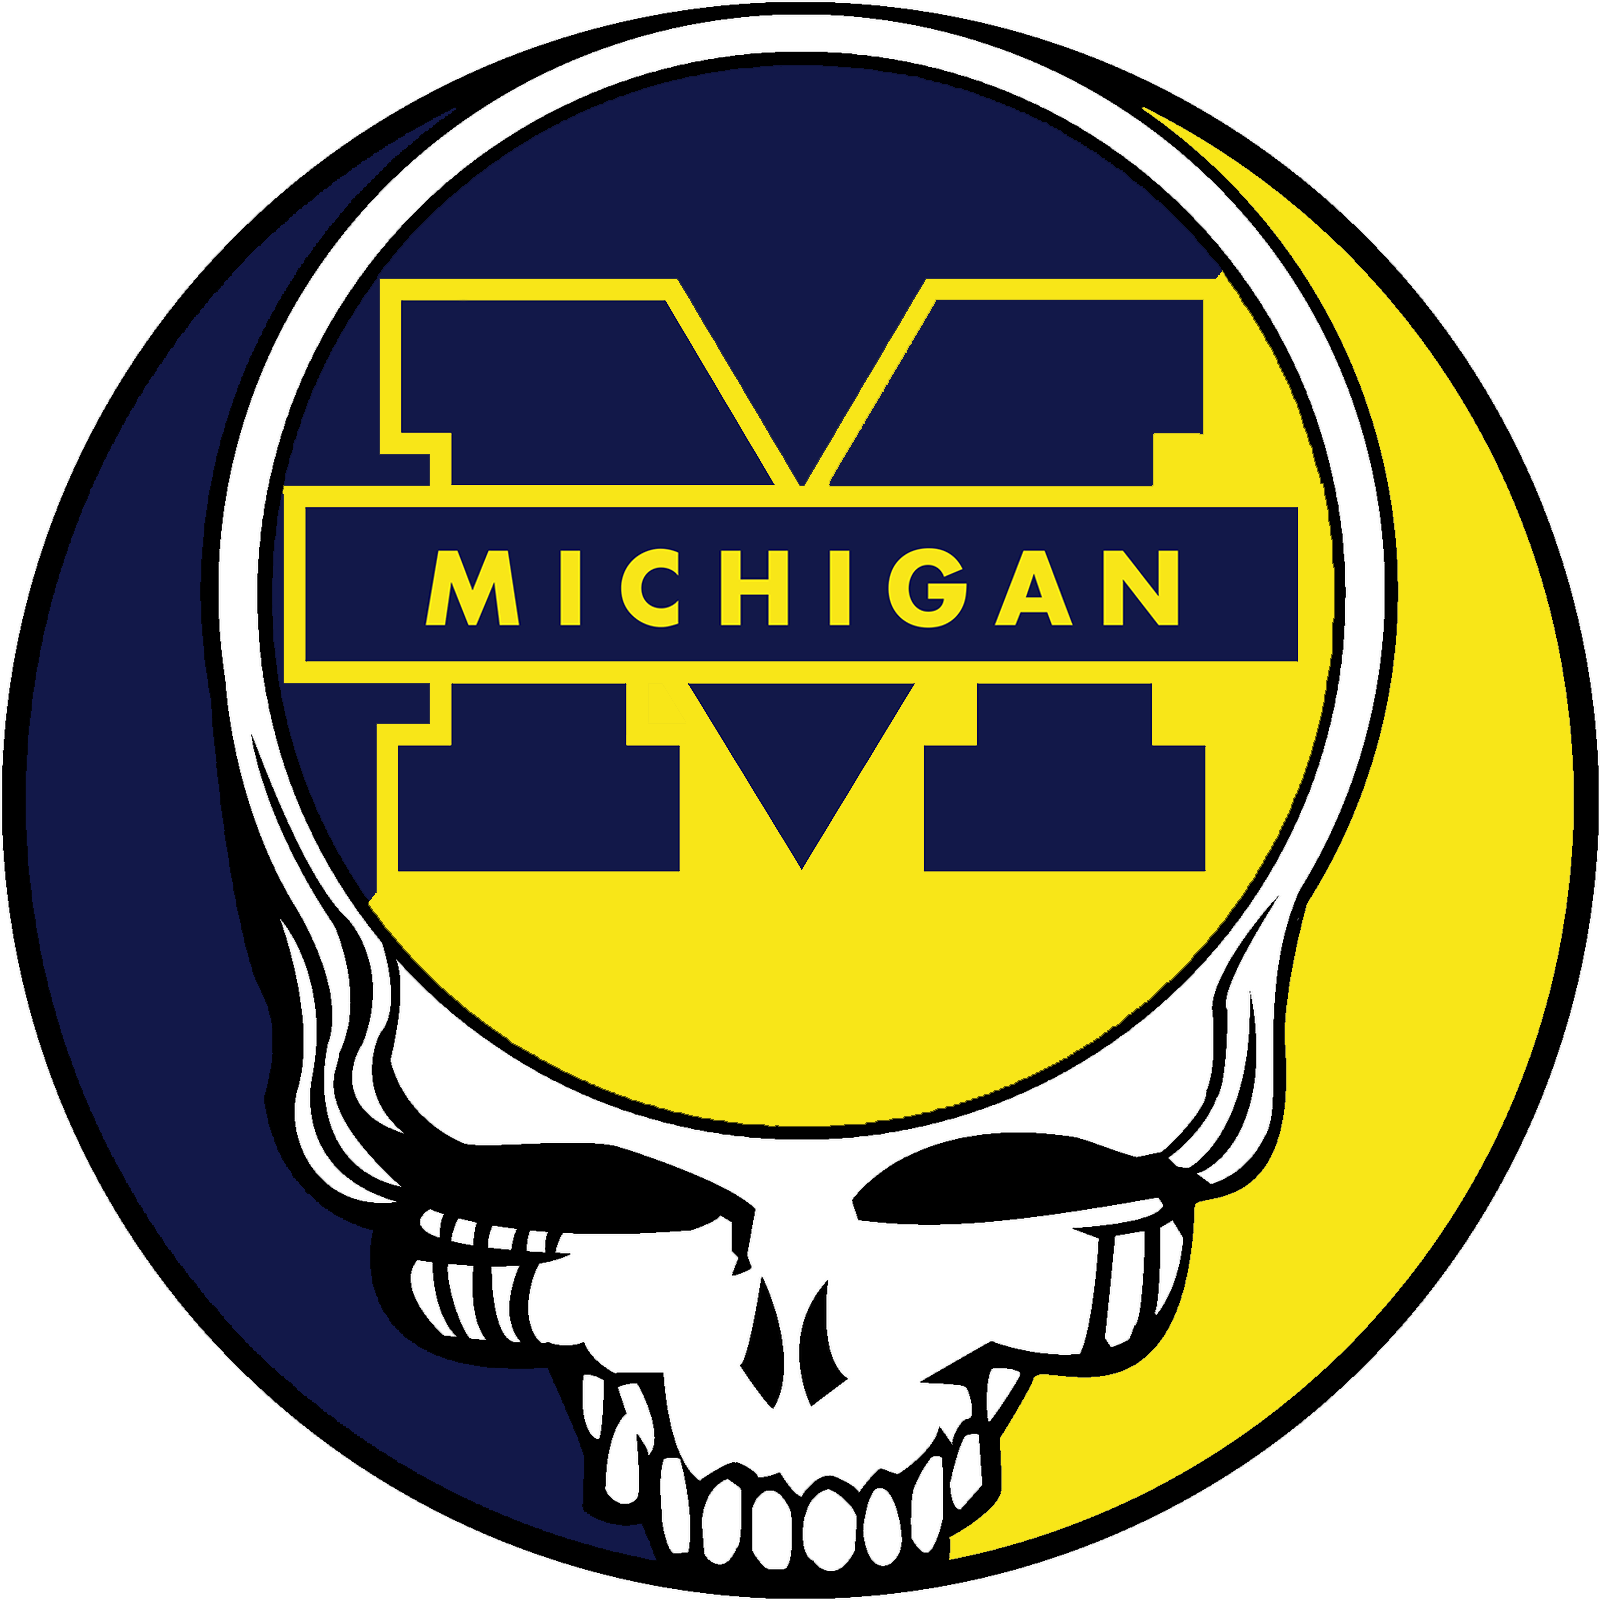 Grateful Dead Stealie Logo - University of Michigan Stealie - Imgur